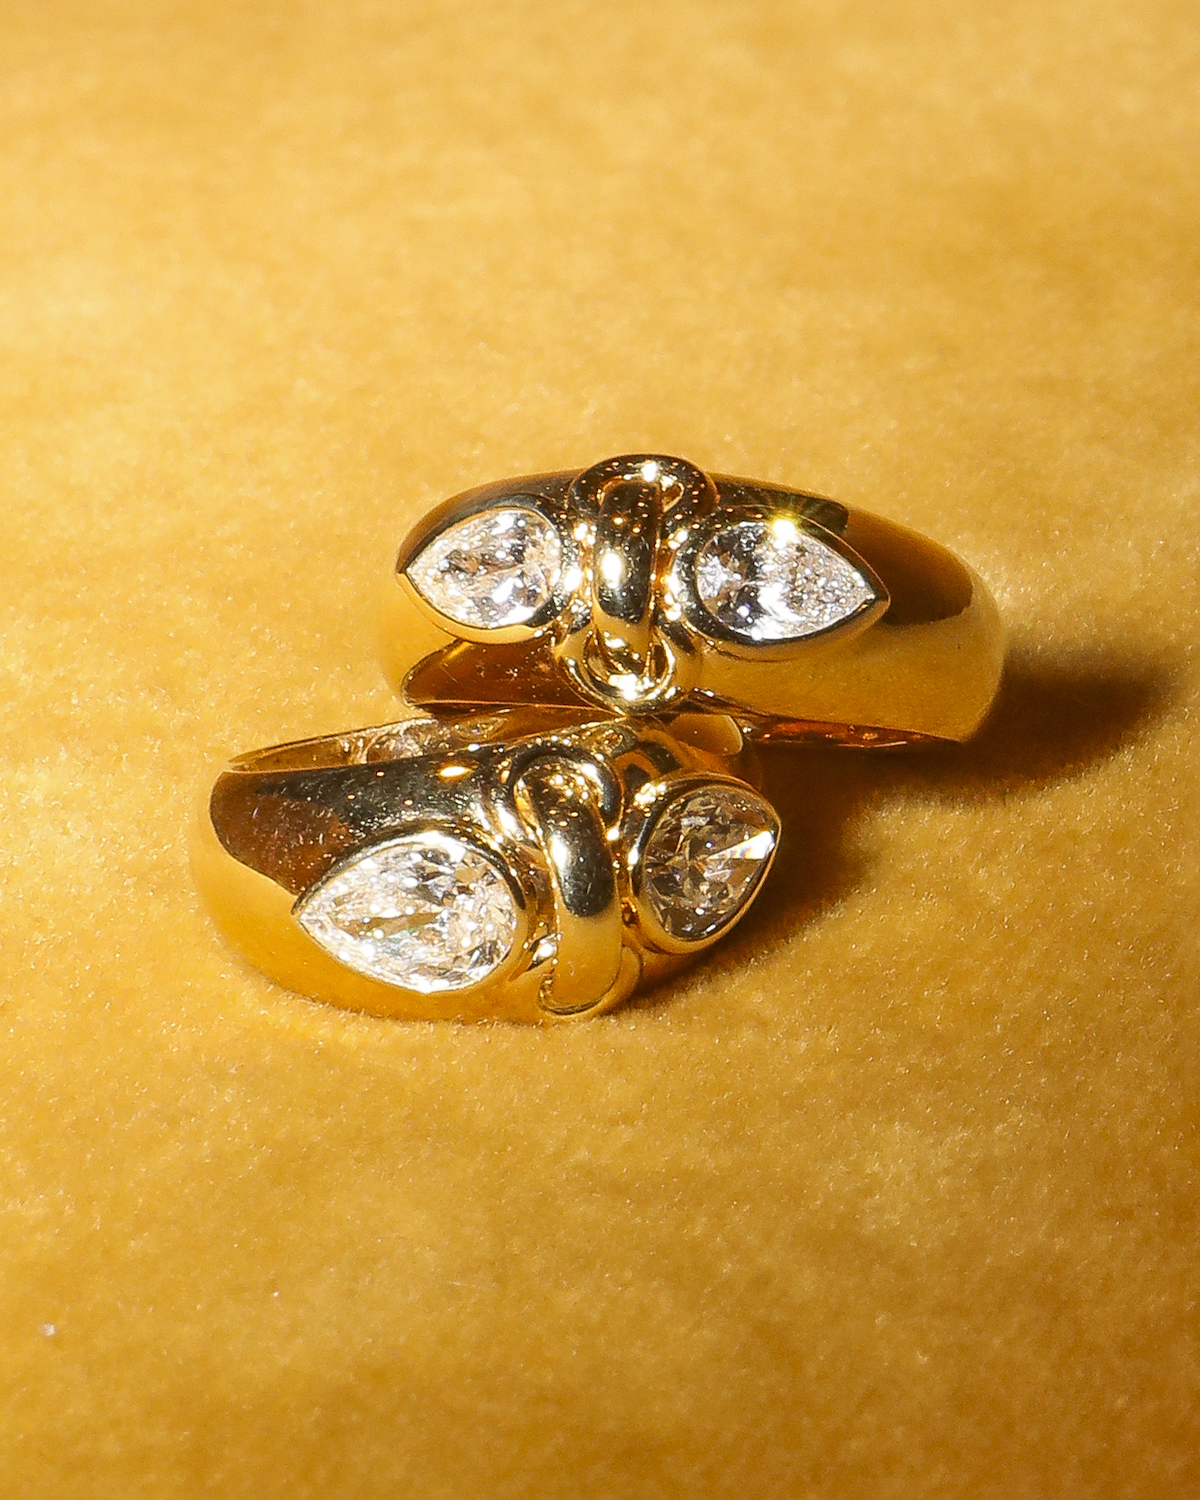 foundrae diamond jewelry pair of pears